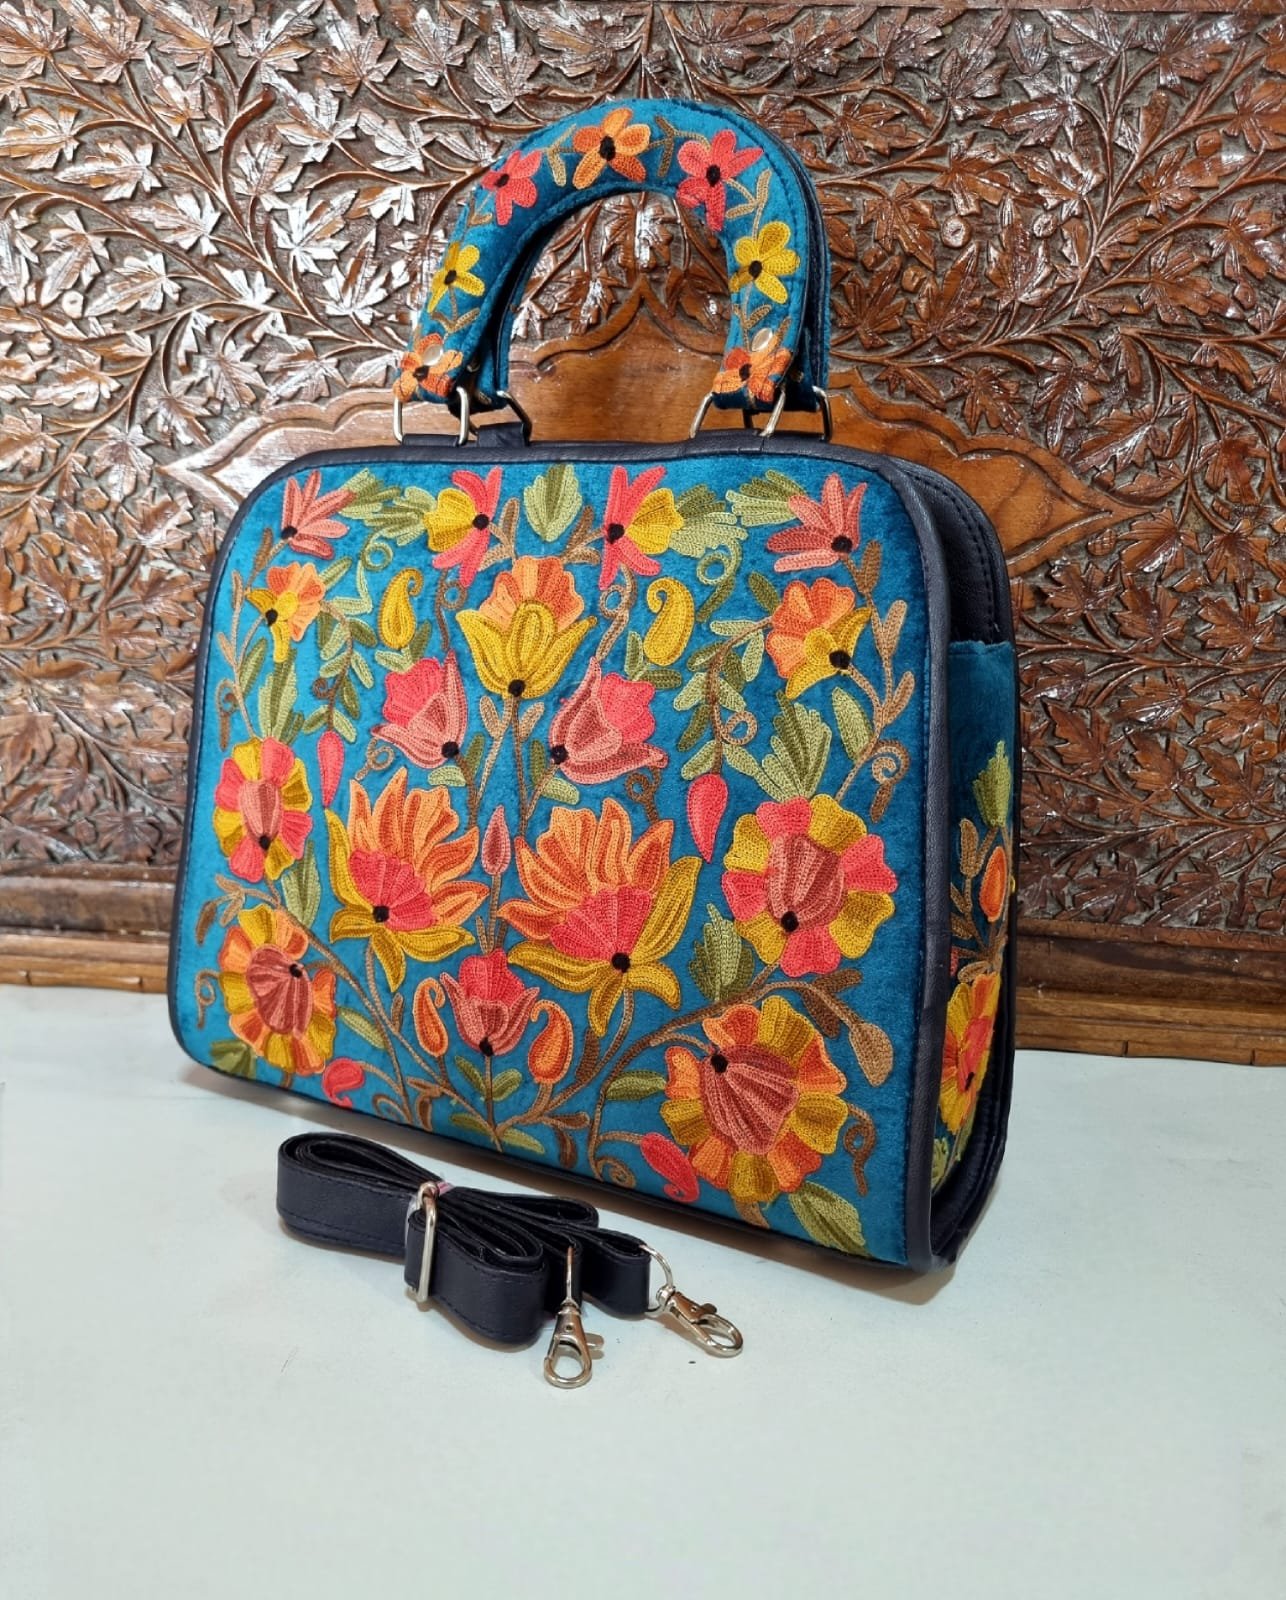 Kashida Embroidery of Bihar Suede Purse with Fringe Tassel Shoulder Bag |  Kashida embroidery, Suede purse, Embroidery purse